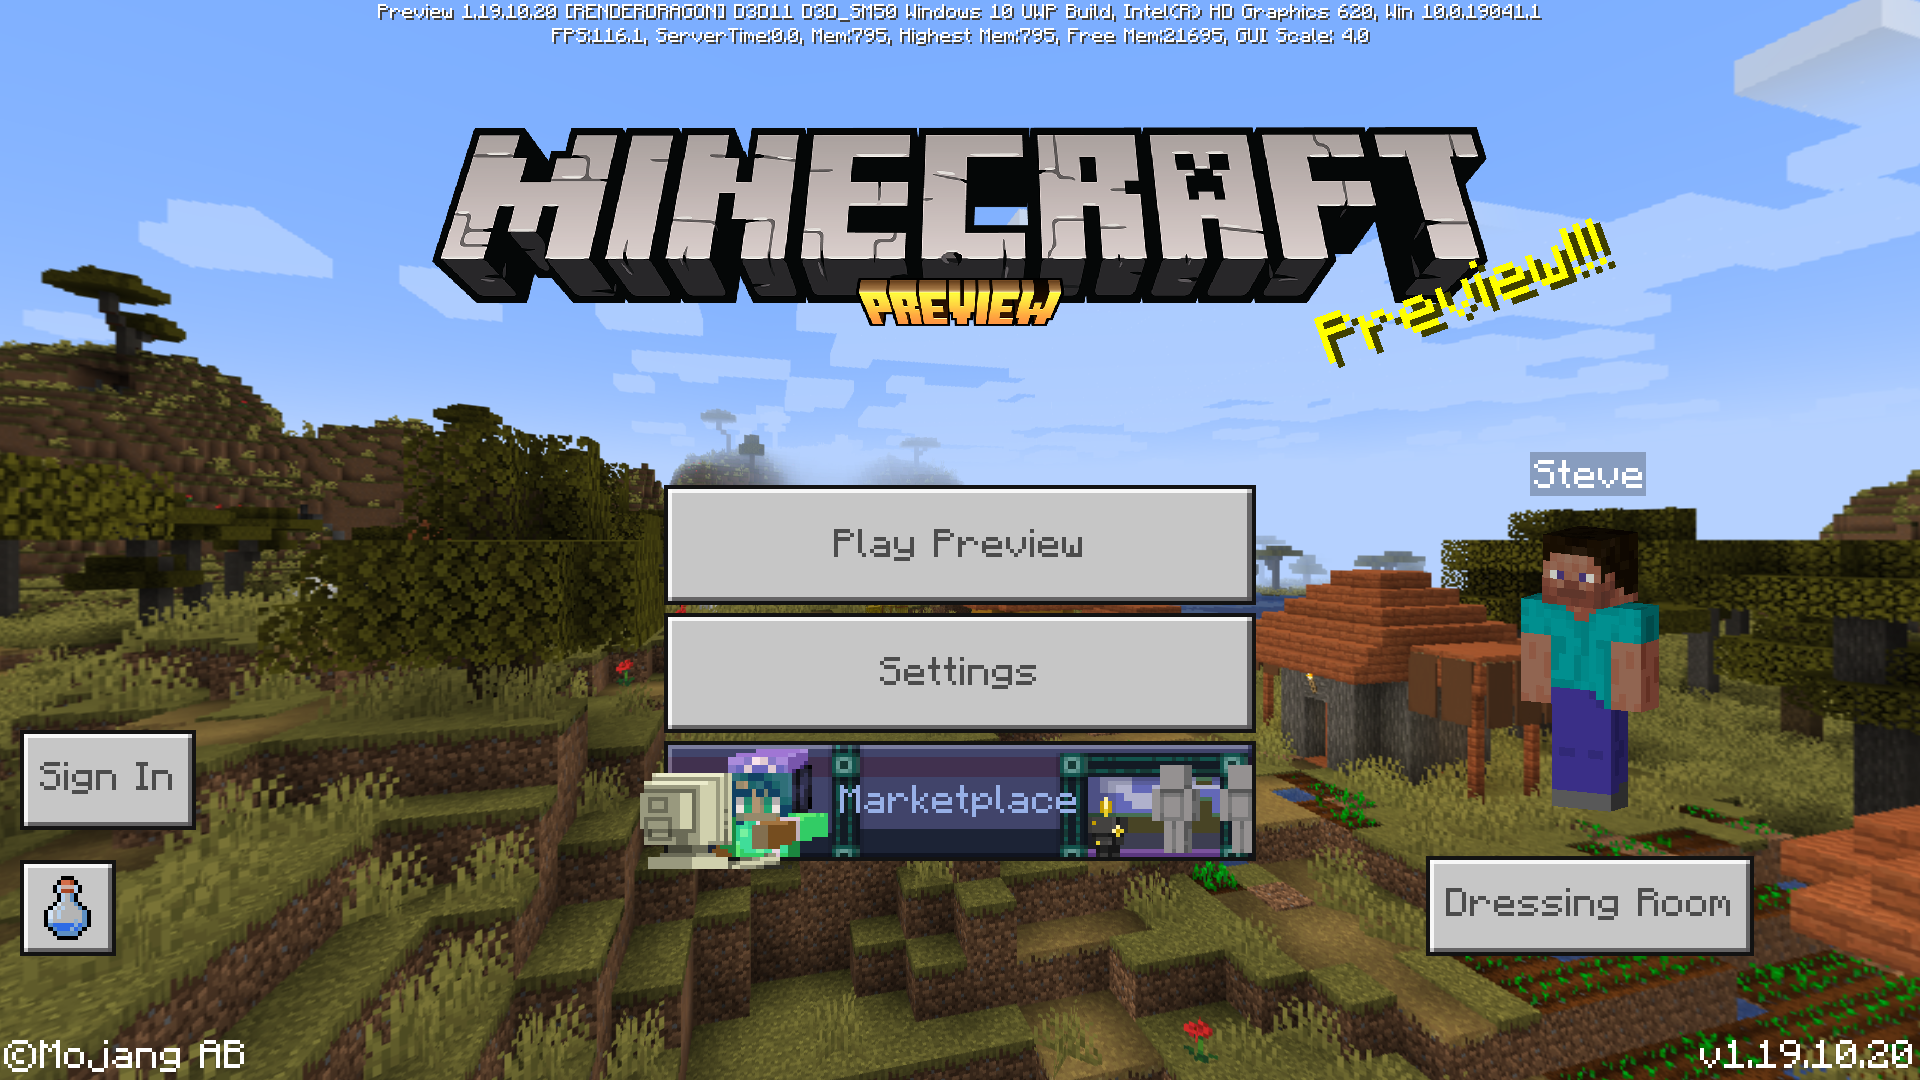 Baixar Minecraft 1.19.10 v(versão completa) APK grátis para Android